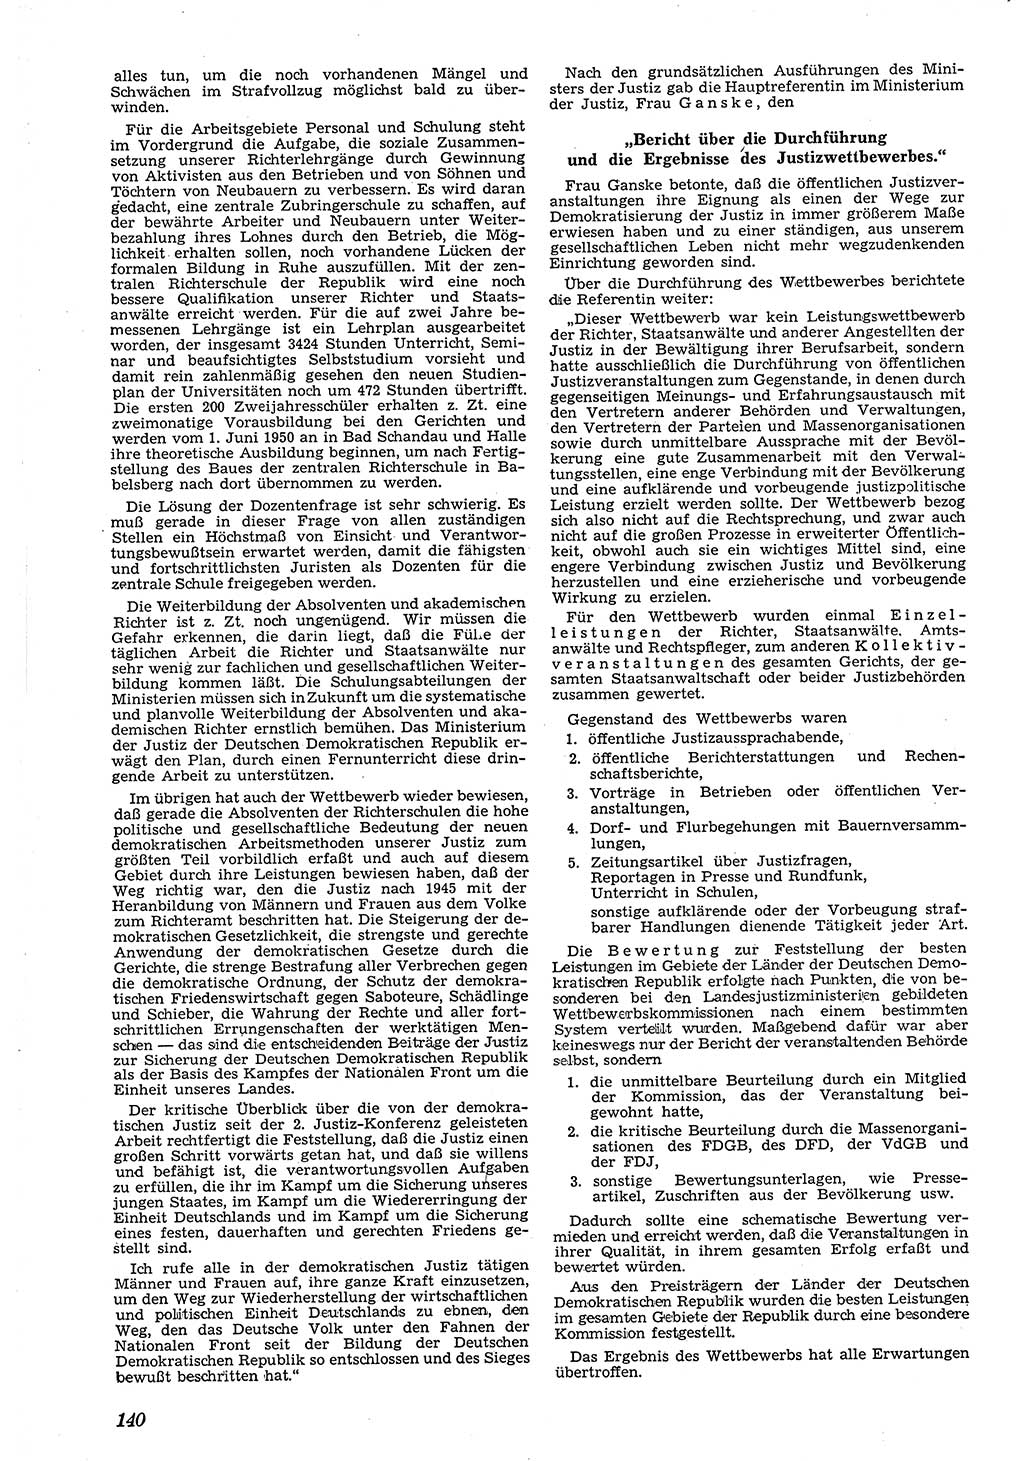 Neue Justiz (NJ), Zeitschrift für Recht und Rechtswissenschaft [Deutsche Demokratische Republik (DDR)], 4. Jahrgang 1950, Seite 140 (NJ DDR 1950, S. 140)